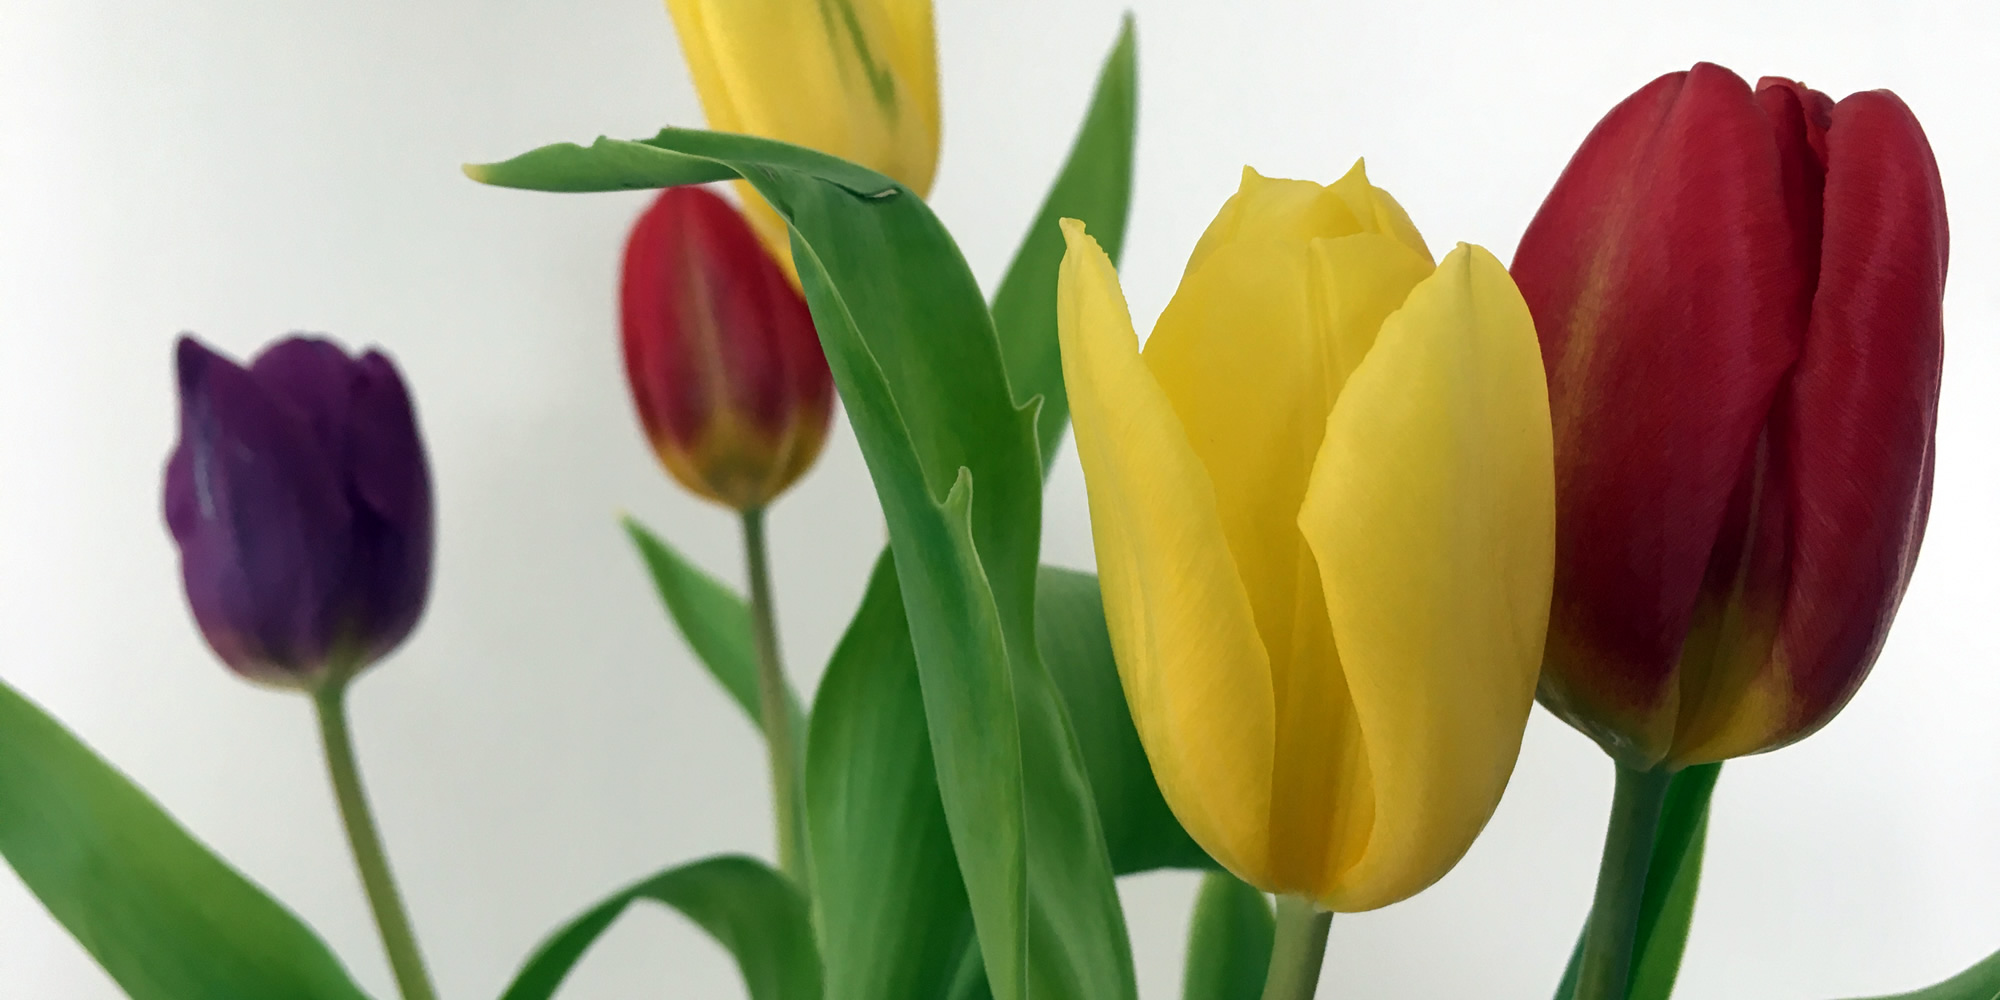 Image: tulips